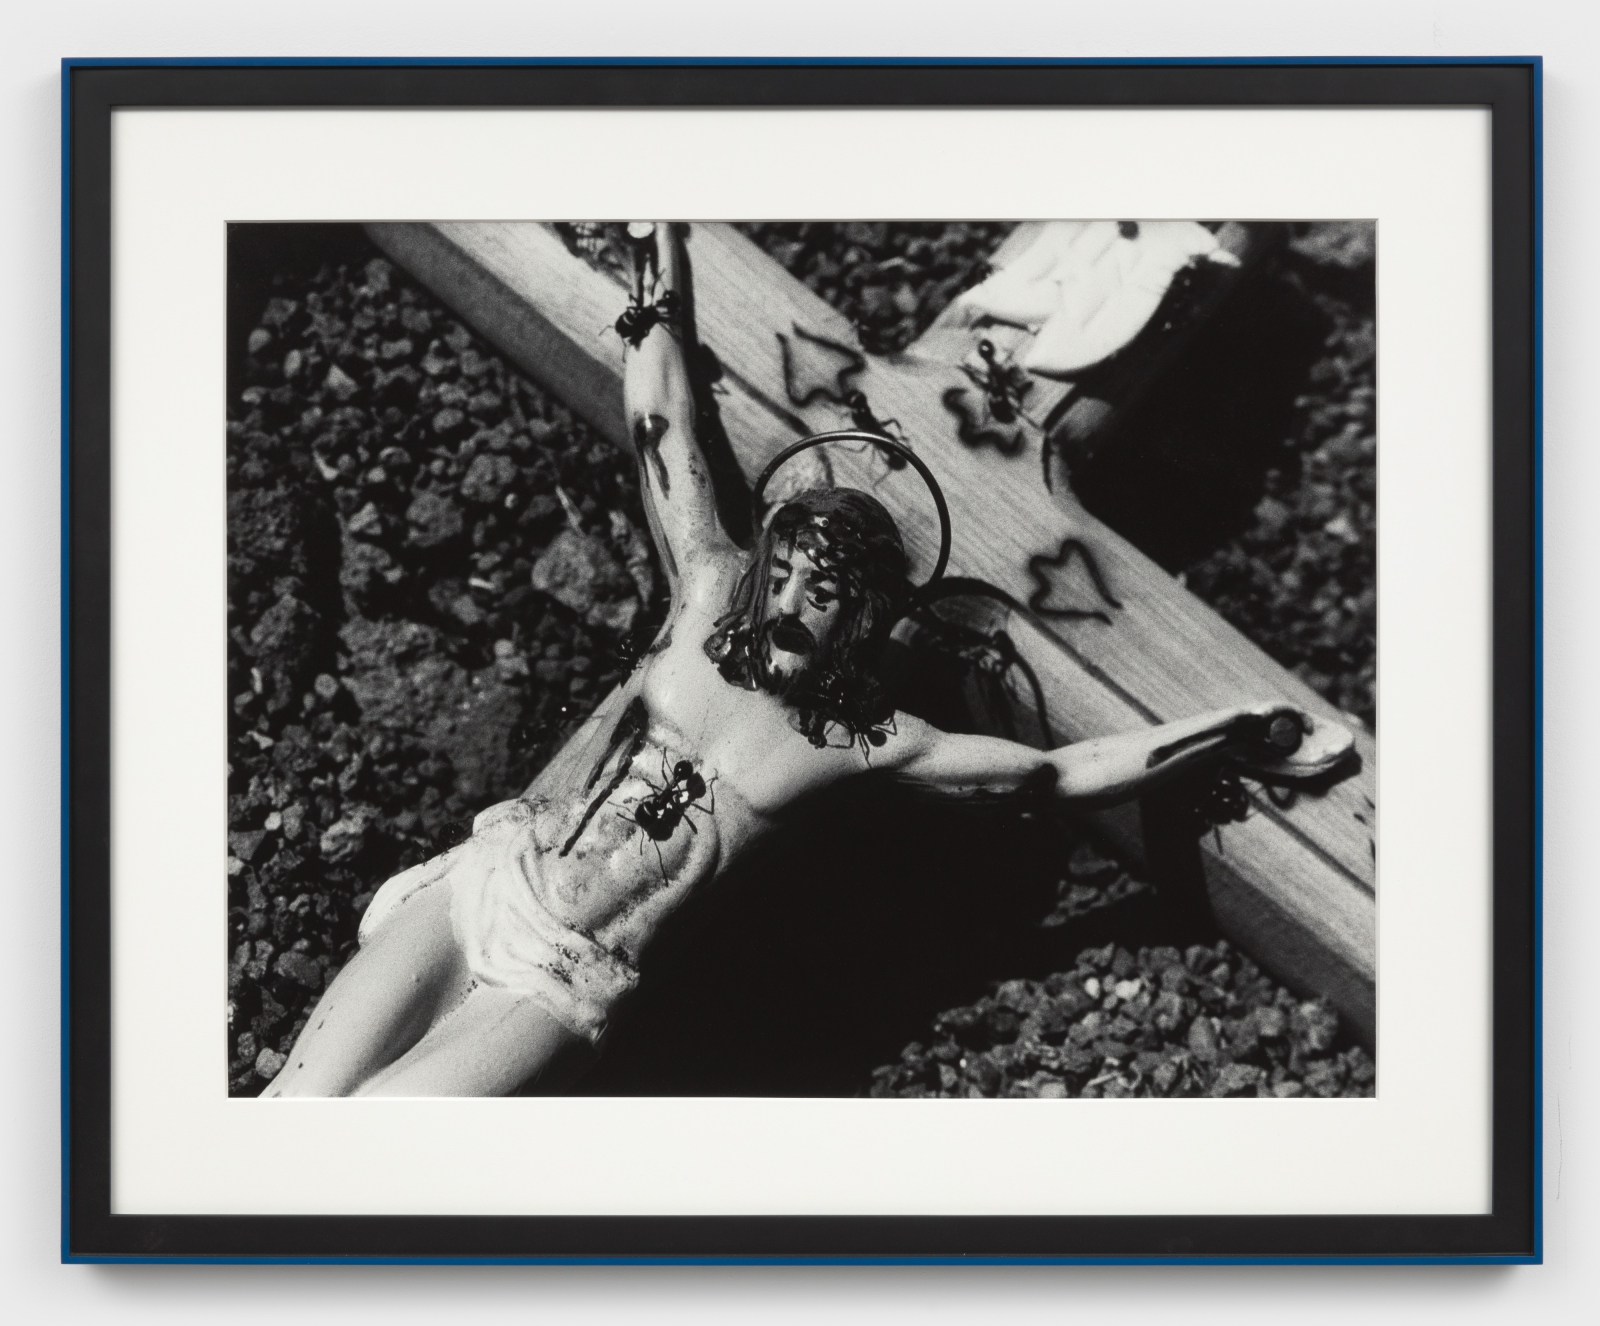 David Wojnarowicz
Untitled (Spirituality), from the Ant Series, 1988-89
gelatin silver print
Sheet: 29 1/8 x 39 1/4 ins. (73.8 x 99.7 cm)
Framed: 40 1/4 x 48 3/4 ins. (102.24 x 123.83 cm)